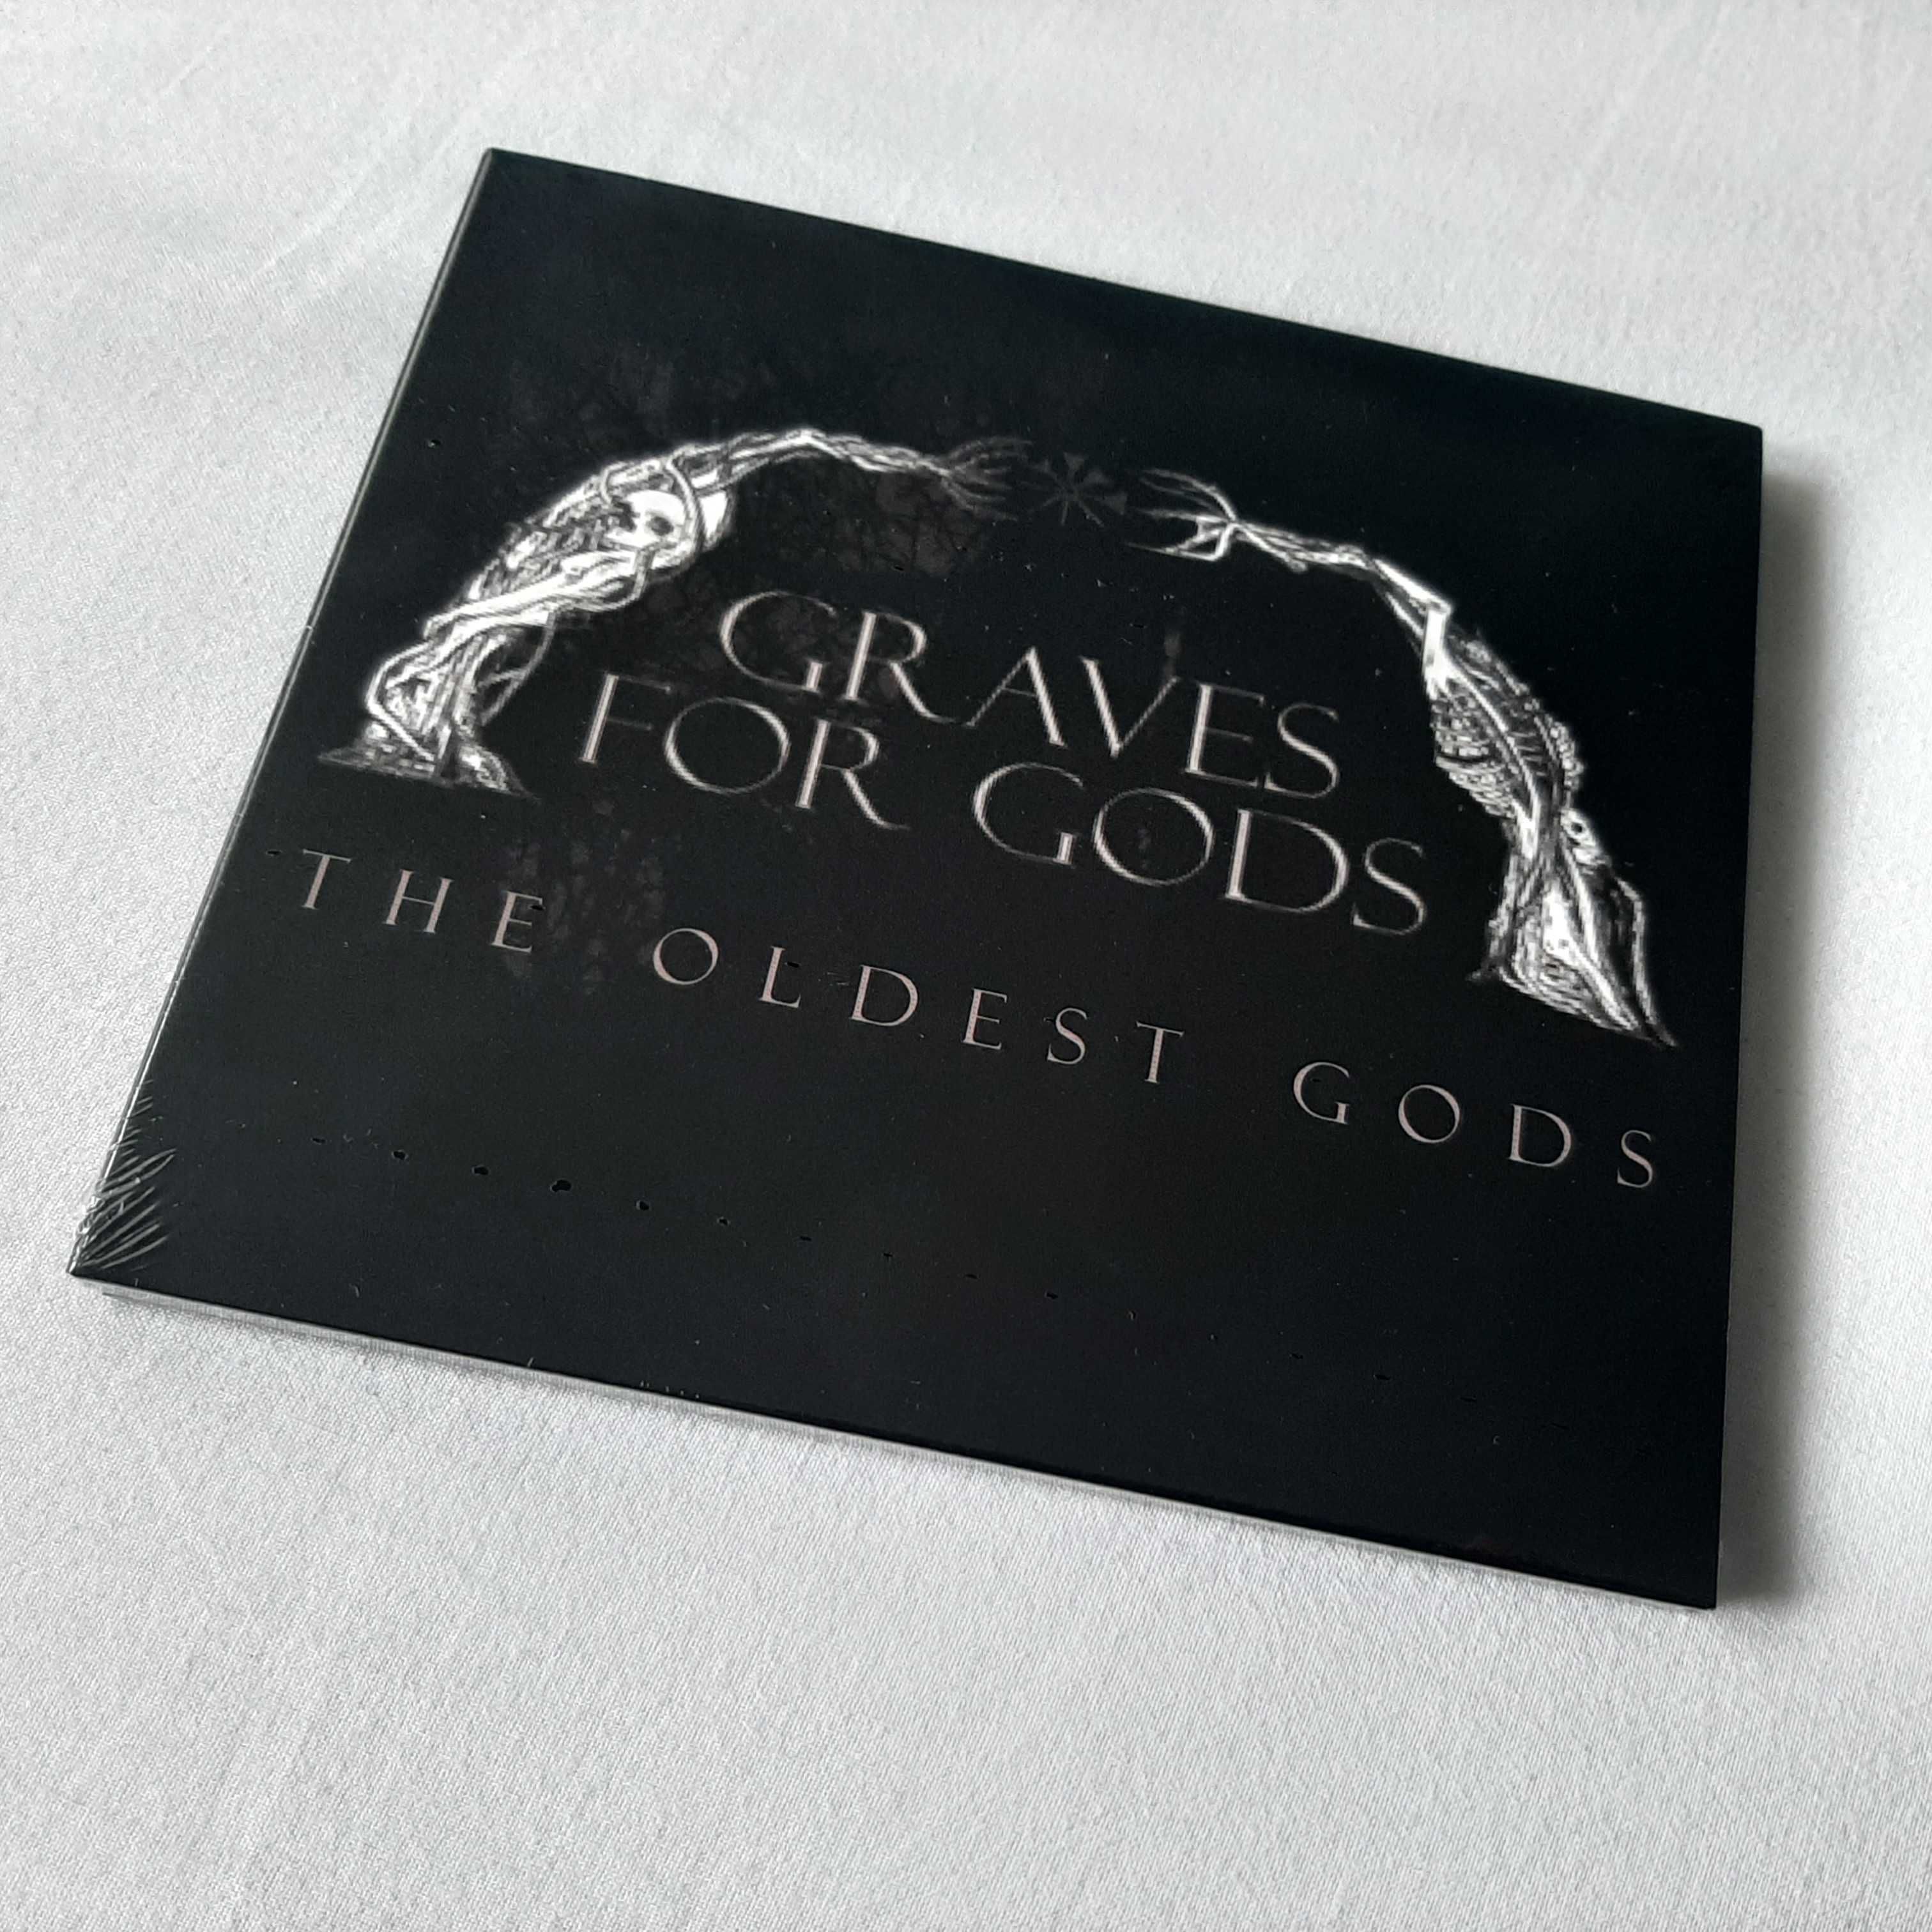 GRAVES FOR GODS "The Oldest Gods" digipak CD 2022 doom metal Australia